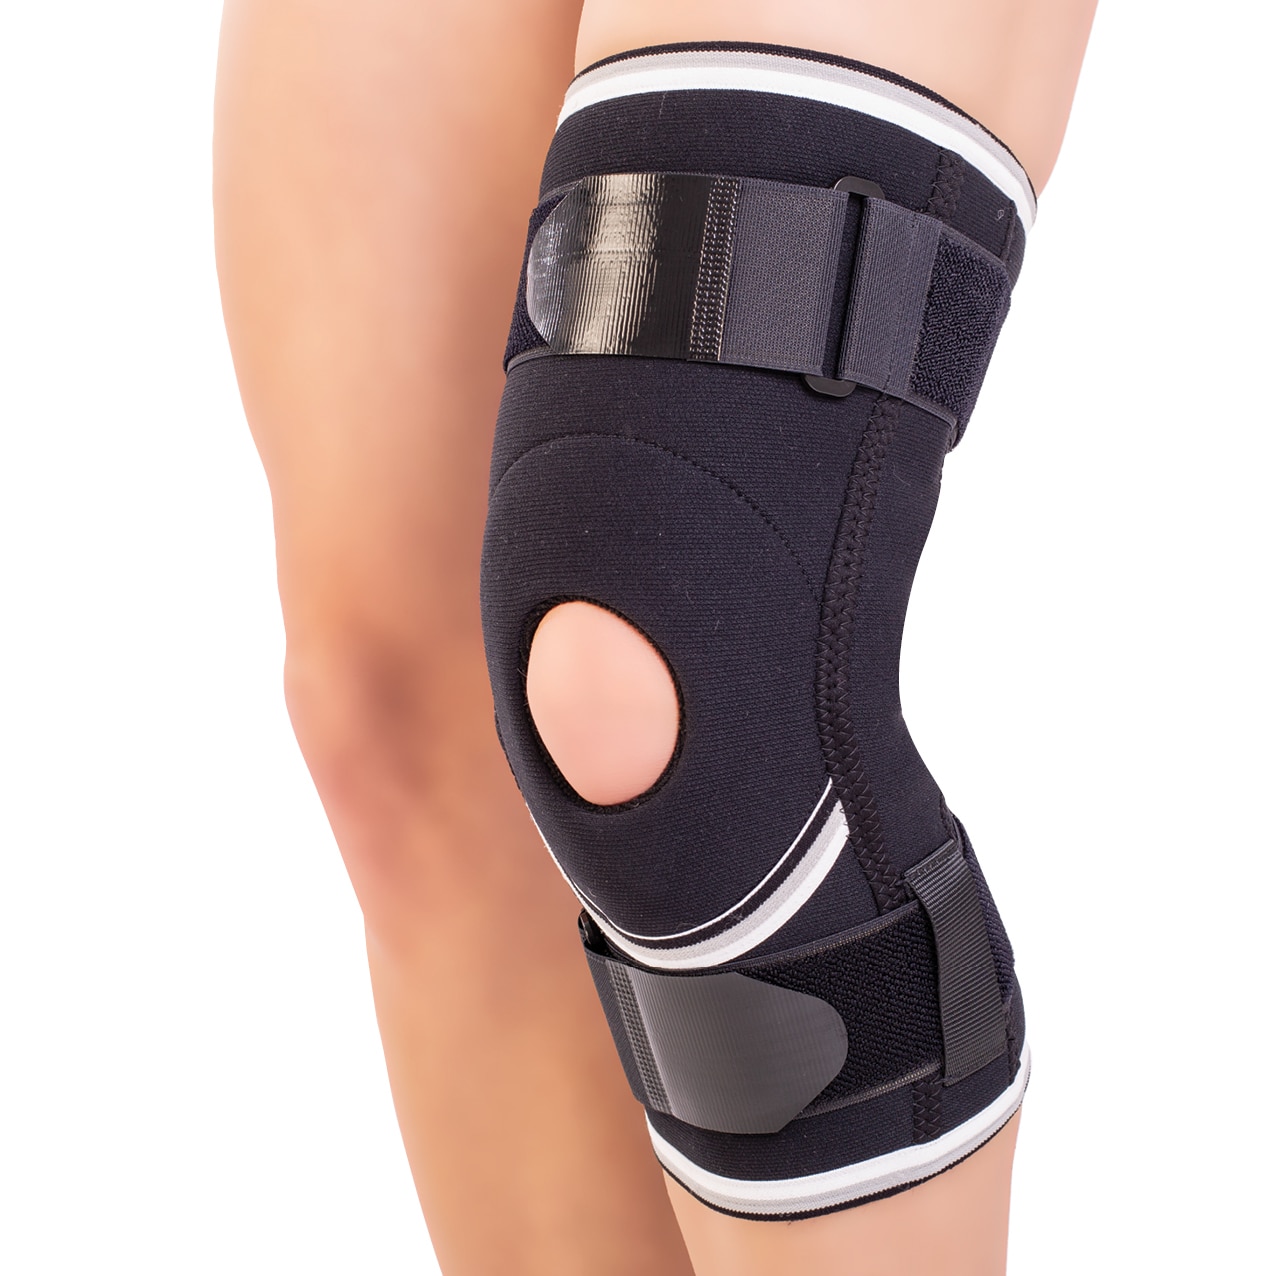 Suport pentru articulația genunchiului. Uleiul de in ajută la durerile articulare